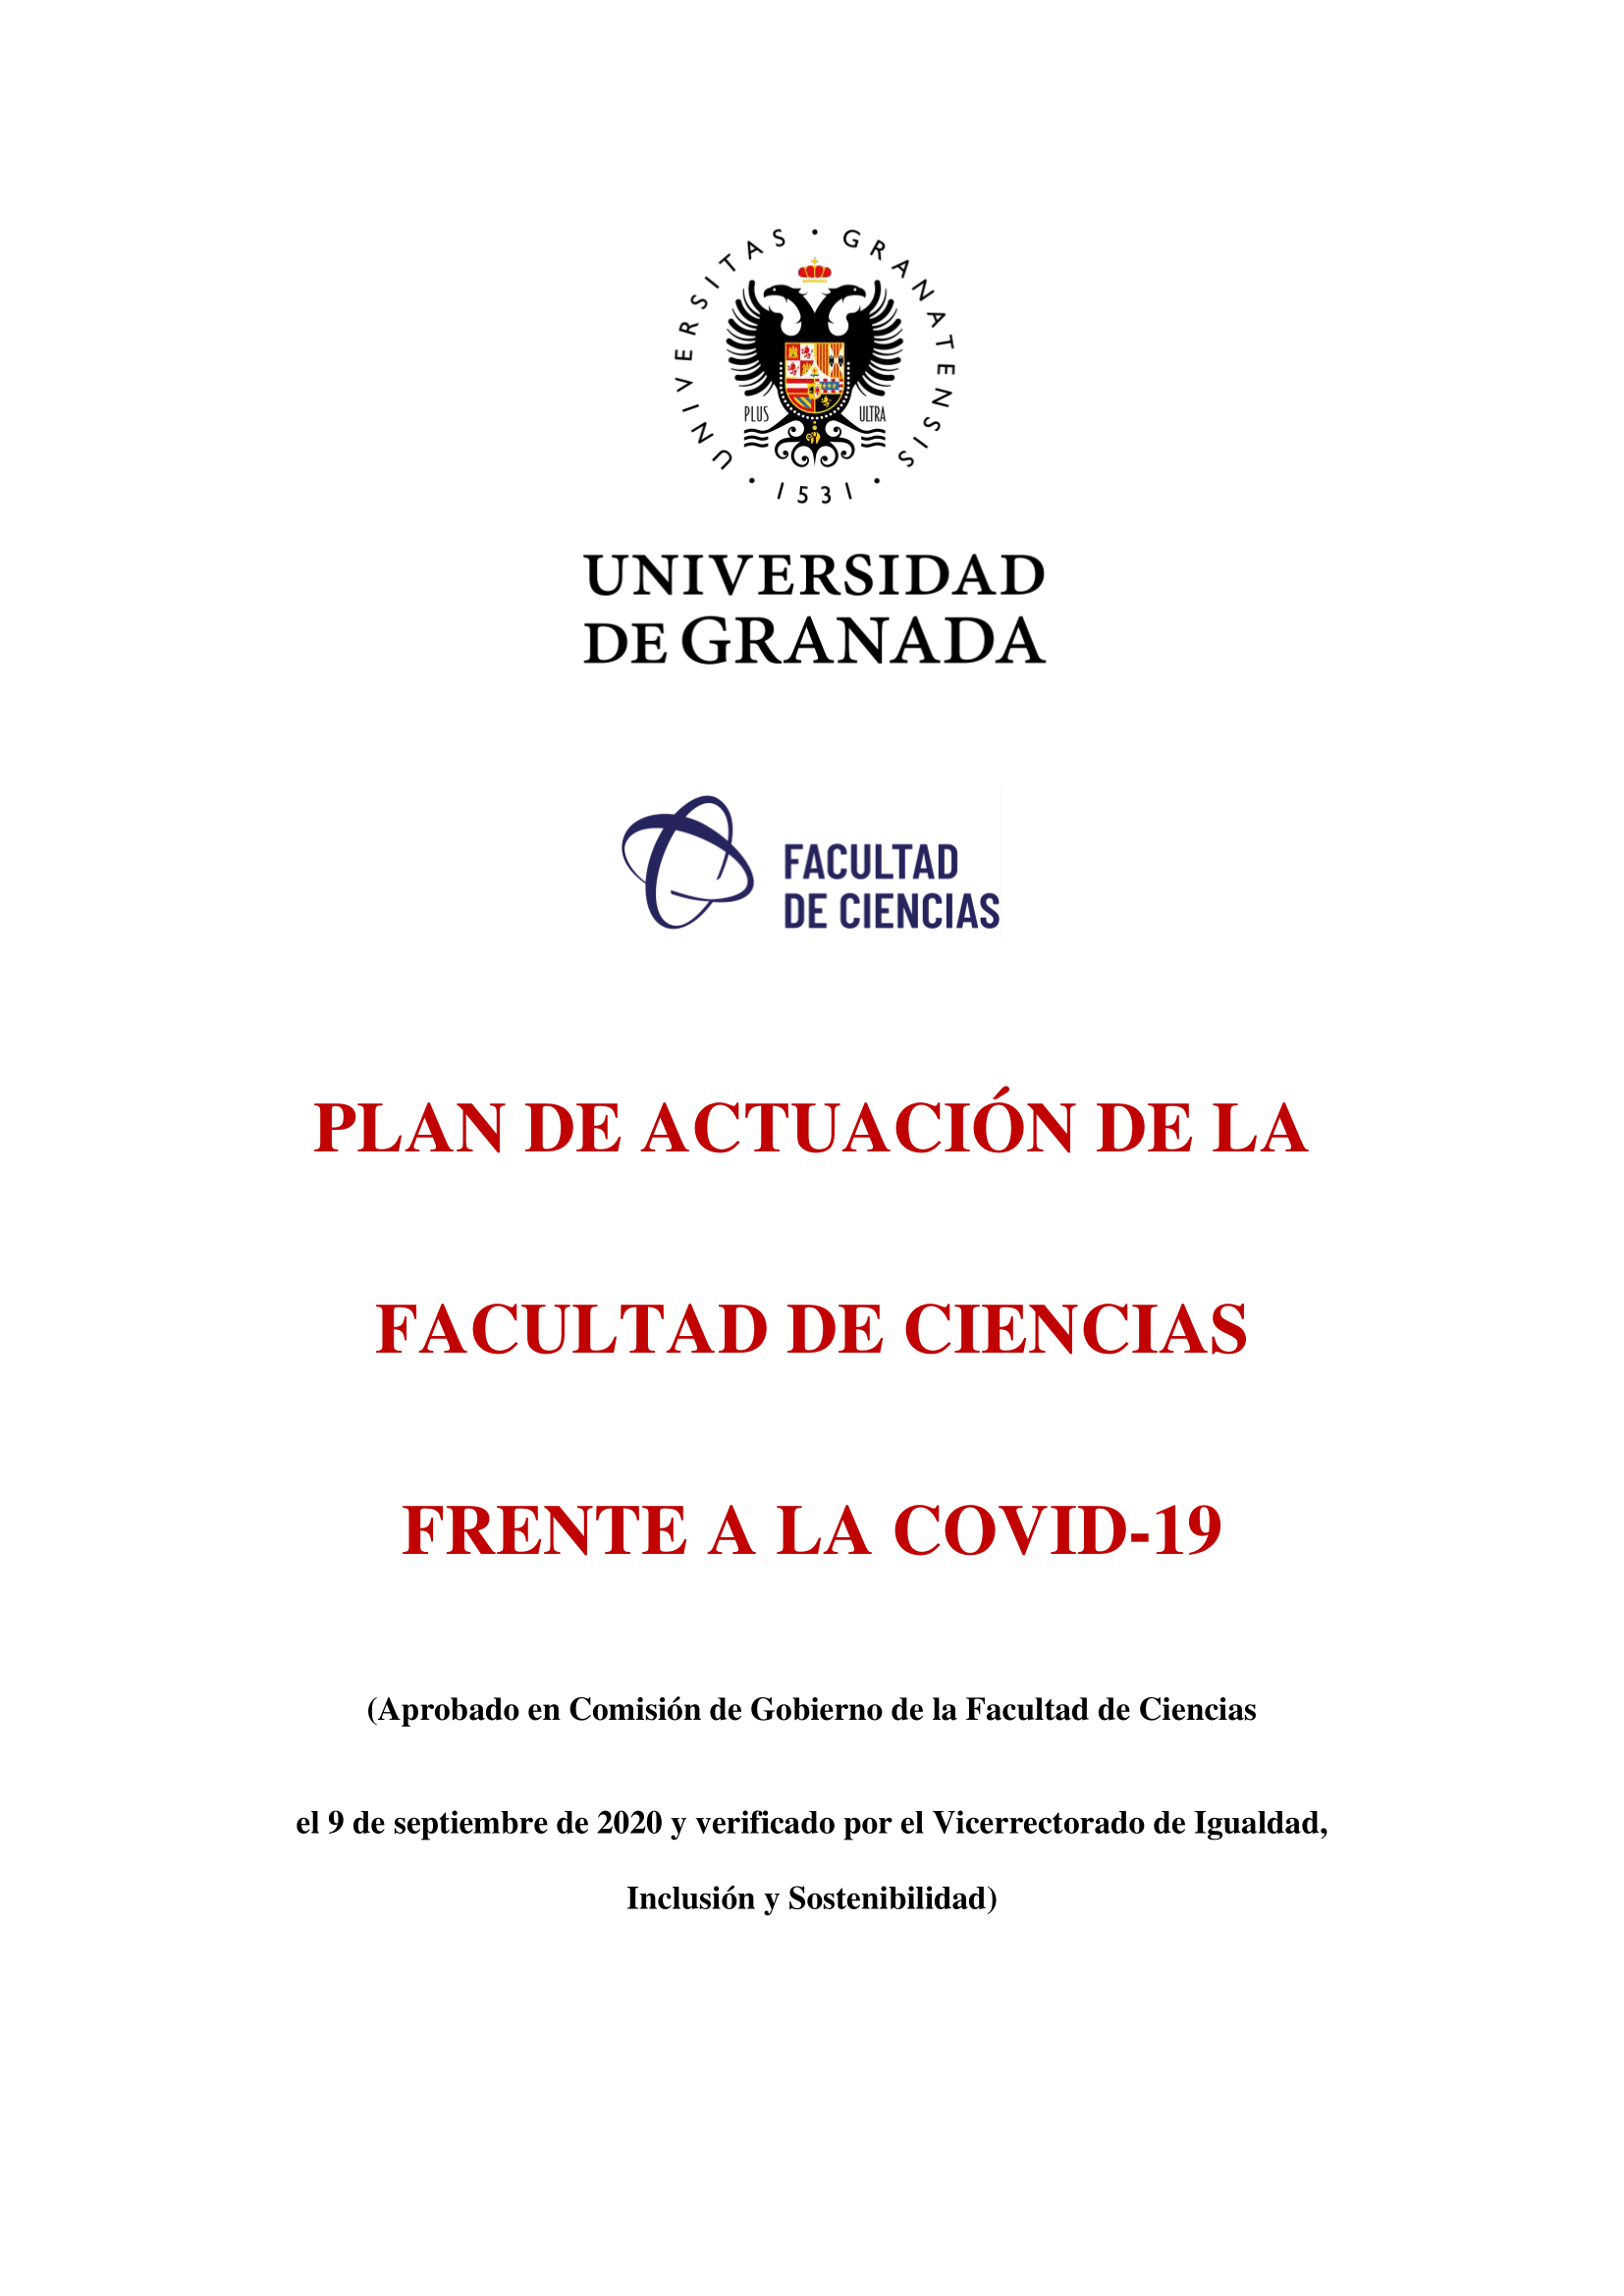 Plan de Actuación de la Facultad de Ciencias frente a la COVID-19